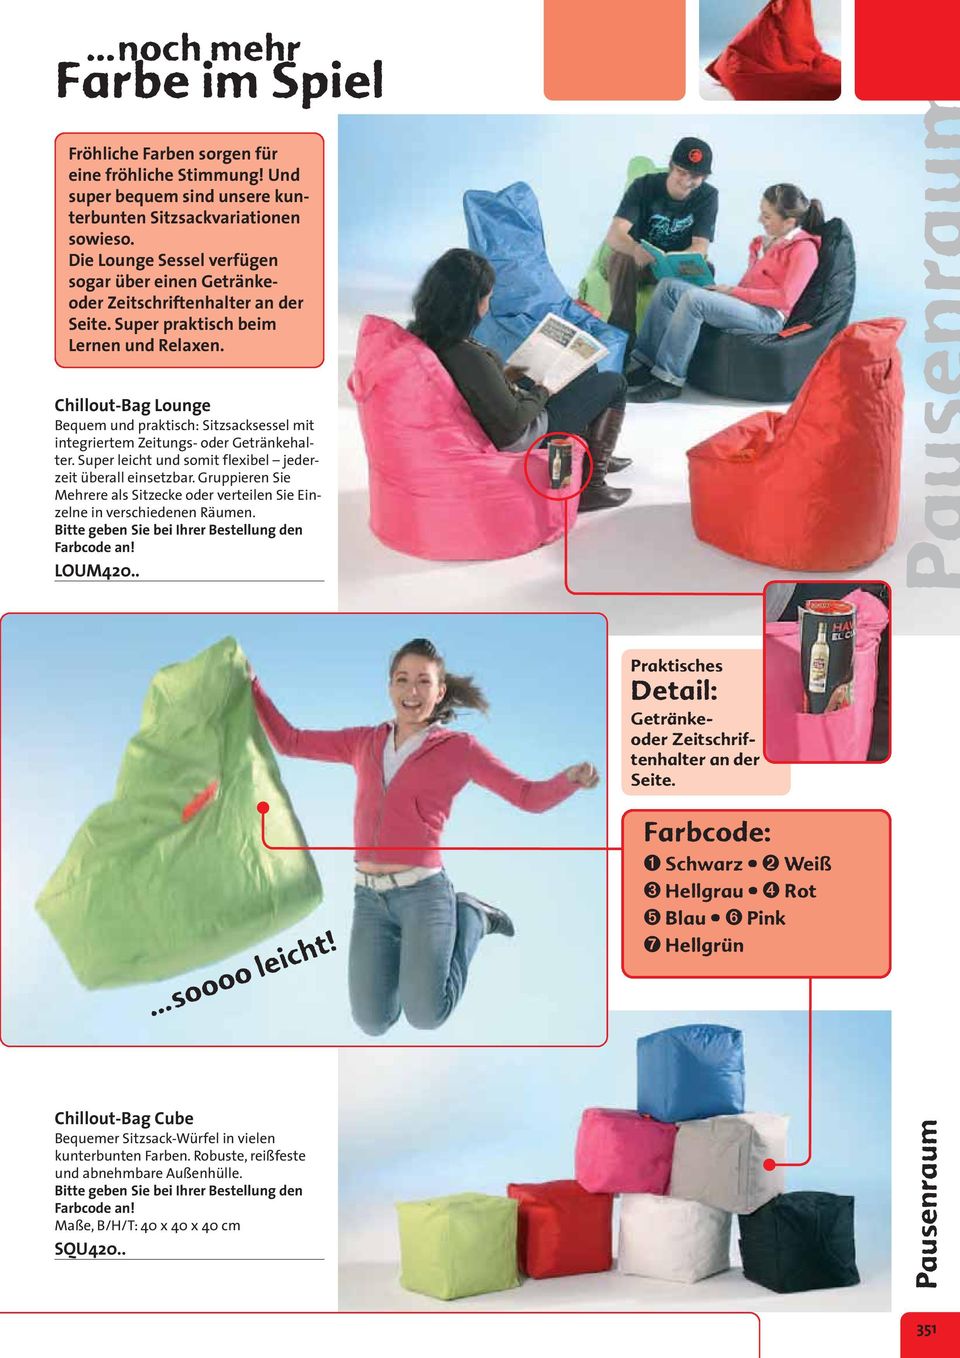 Chillout-Bag Lounge Bequem und praktisch: Sitzsacksessel mit integriertem Zeitungs- oder Getränkehalter. Super leicht und somit flexibel jederzeit überall einsetzbar.